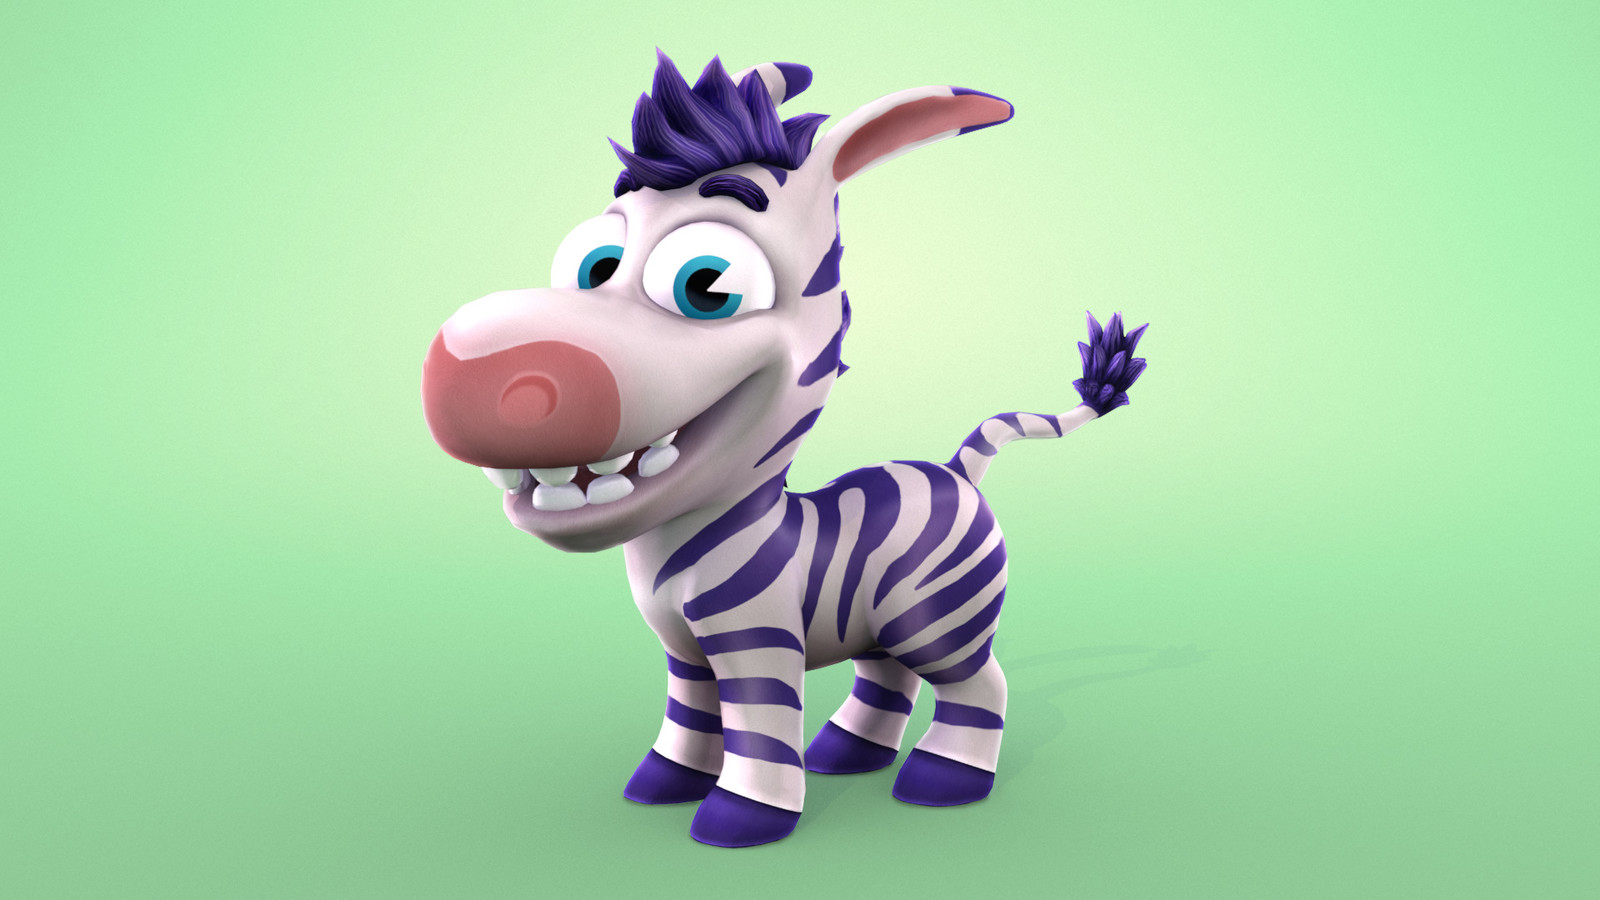 'Tiny Zebra' Main Character